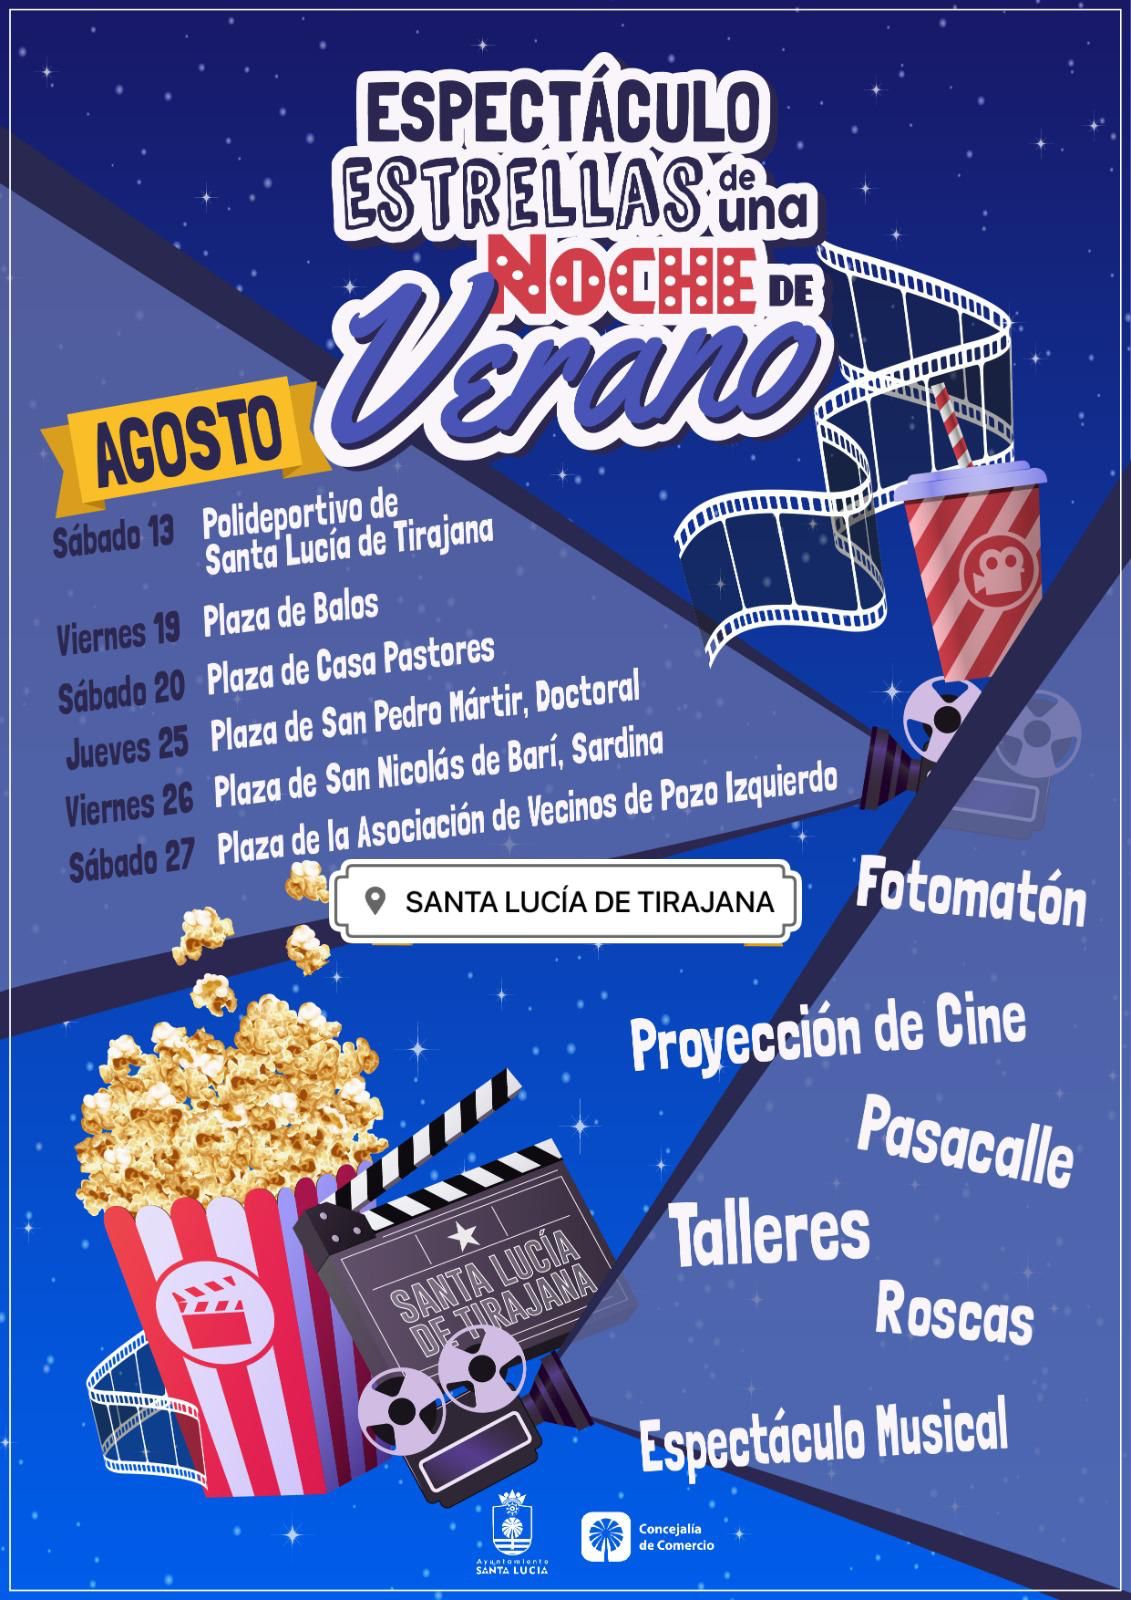 Cine de Verano en los pueblos y barrios de Santa Lucía de Tirajana los próximos fines de semana de agosto